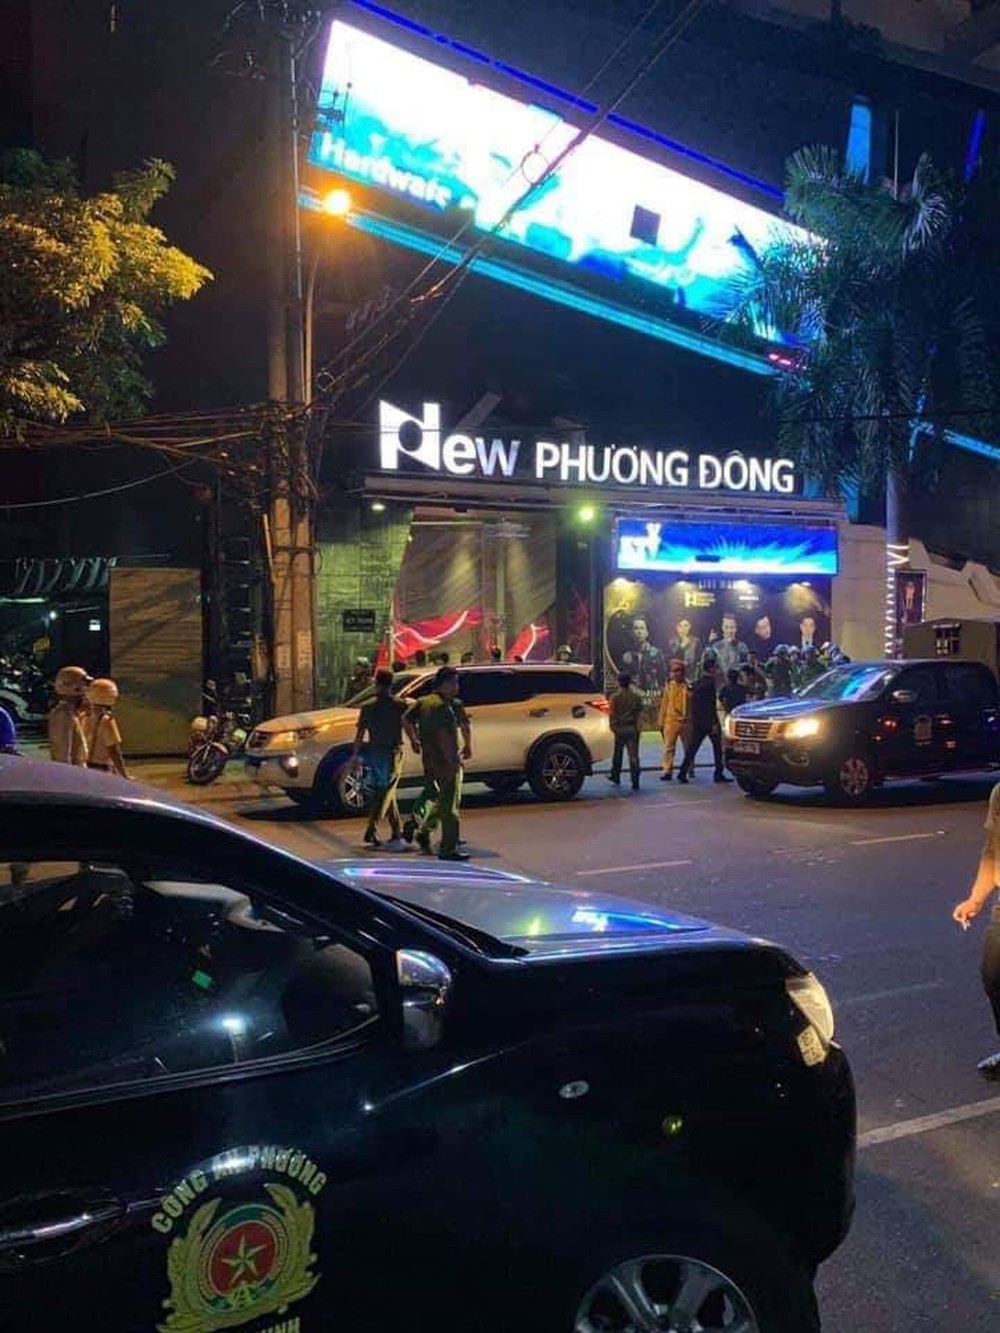 GĐ Công an Đà Nẵng: Tội phạm truy nã của Trung Quốc trốn ở Đà Nẵng, 6 tháng bắt 20 trường hợp - Ảnh 1.